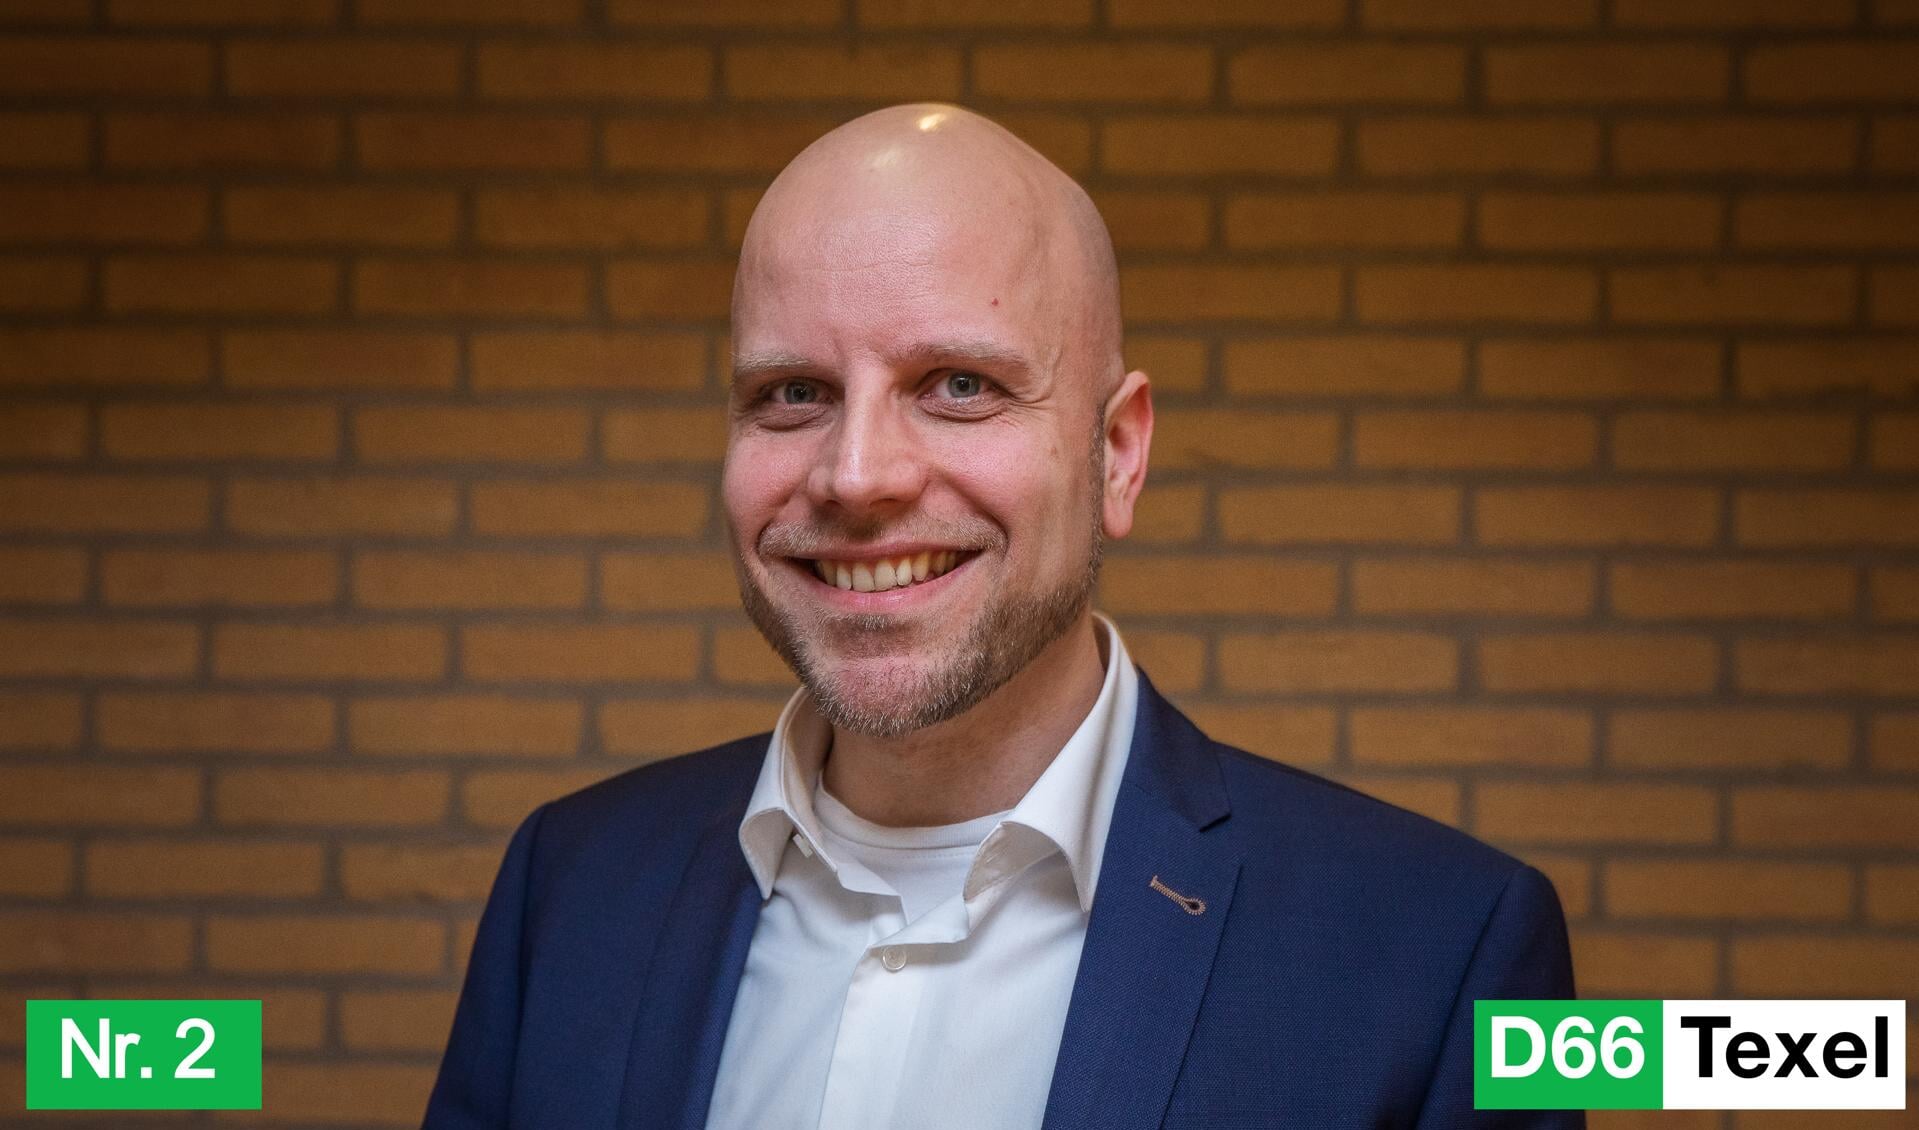 Pepijn Lijklema, nummer 2 en wethouderskandidaat D66 Texel